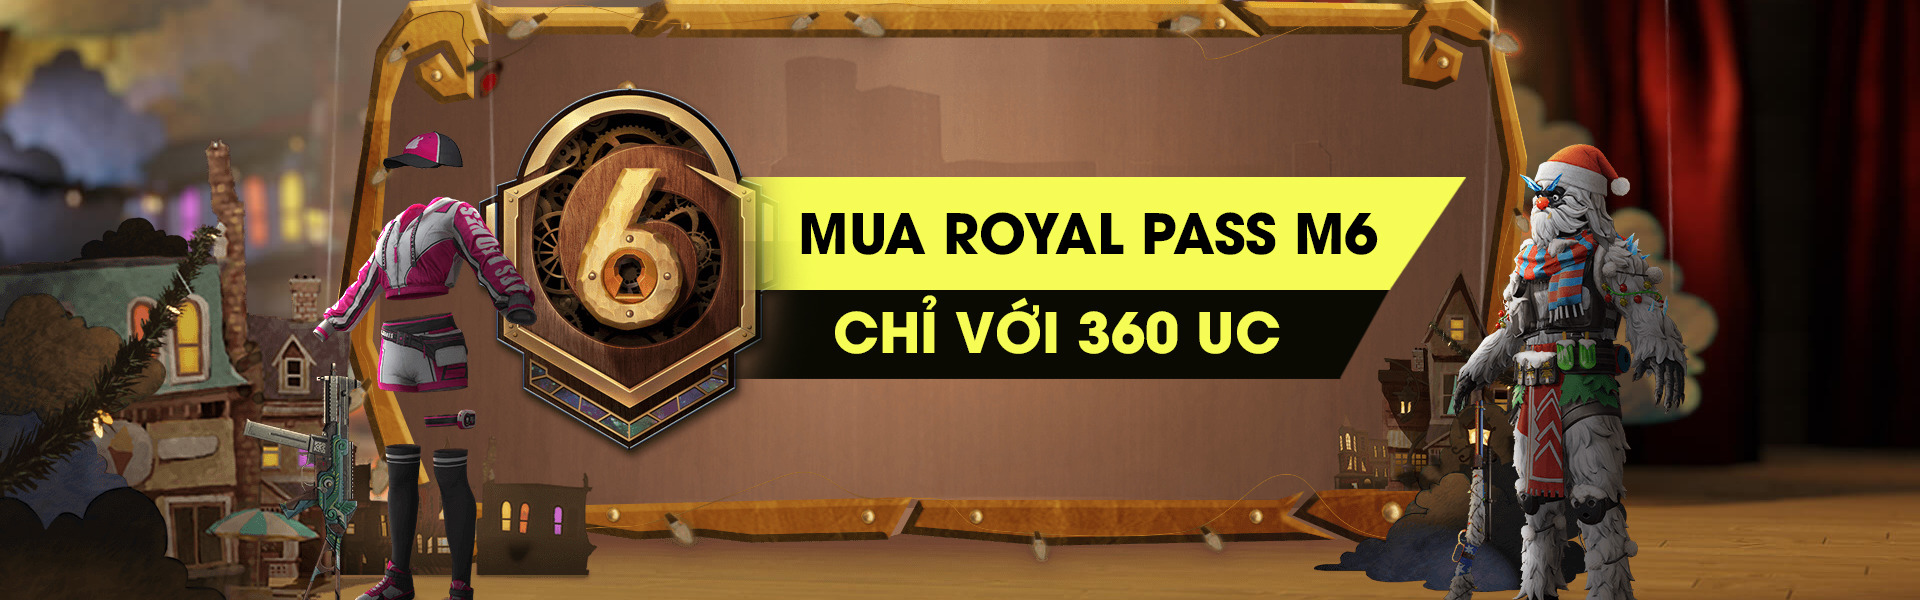 PUBG Mobile - Hướng dẫn mua Royal Pass M6 chỉ với 360 UC